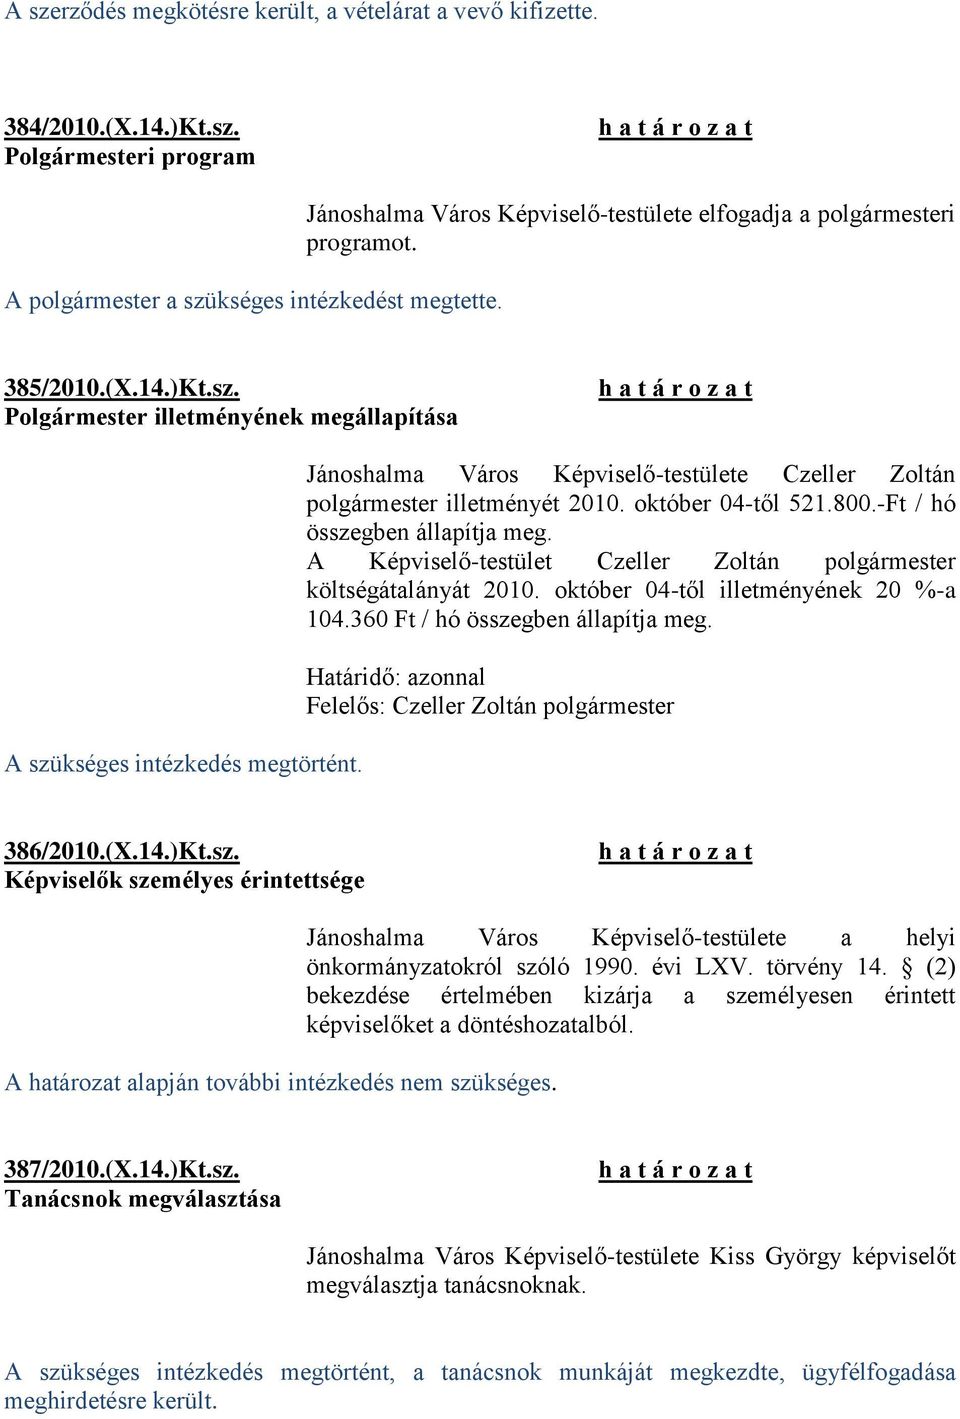 Jánoshalma Város Képviselő-testülete Czeller Zoltán polgármester illetményét 2010. október 04-től 521.800.-Ft / hó összegben állapítja meg.